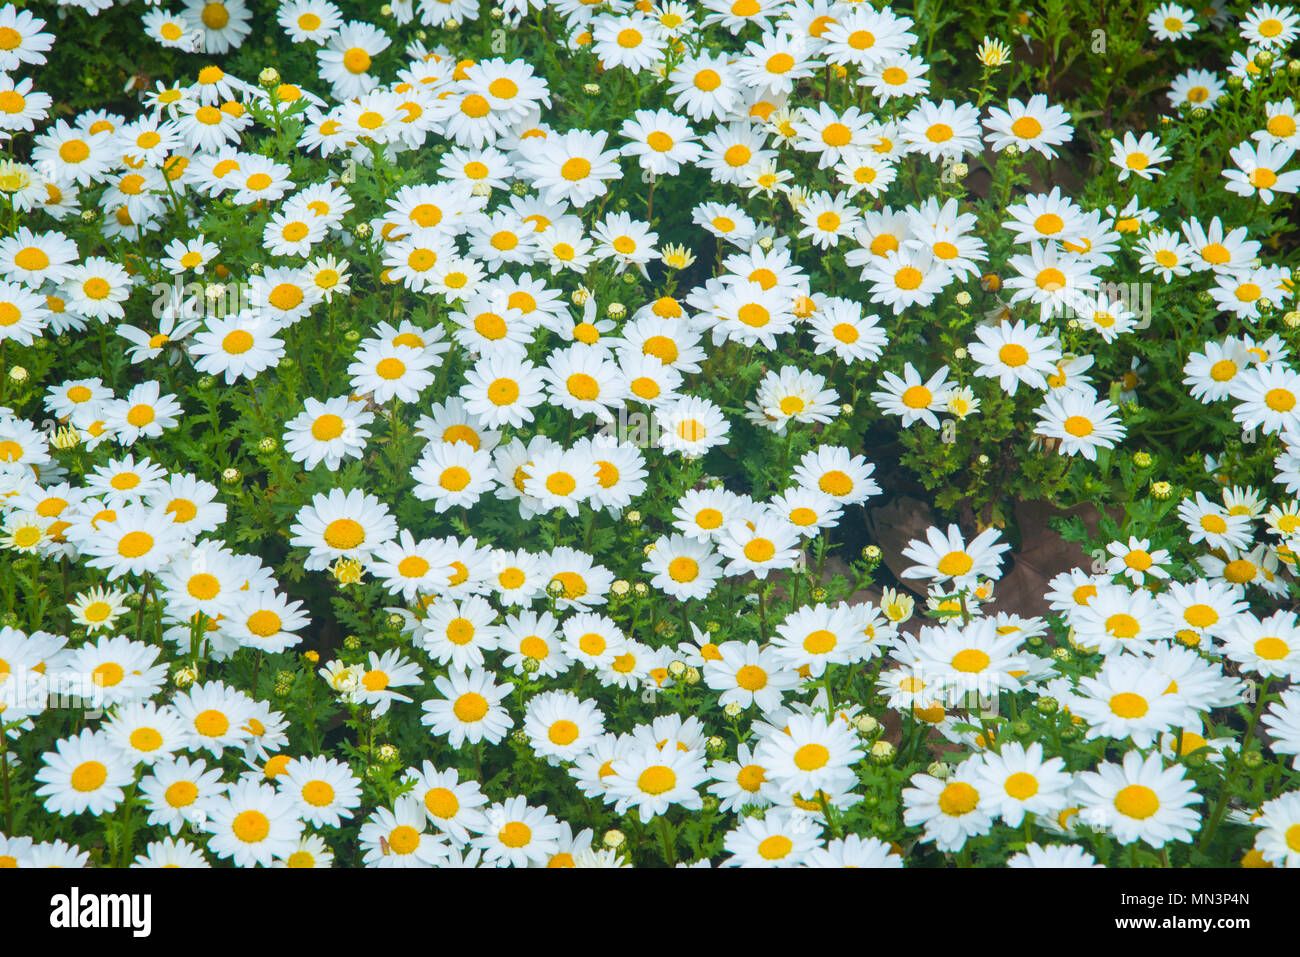 Daisy flowers. Stock Photo